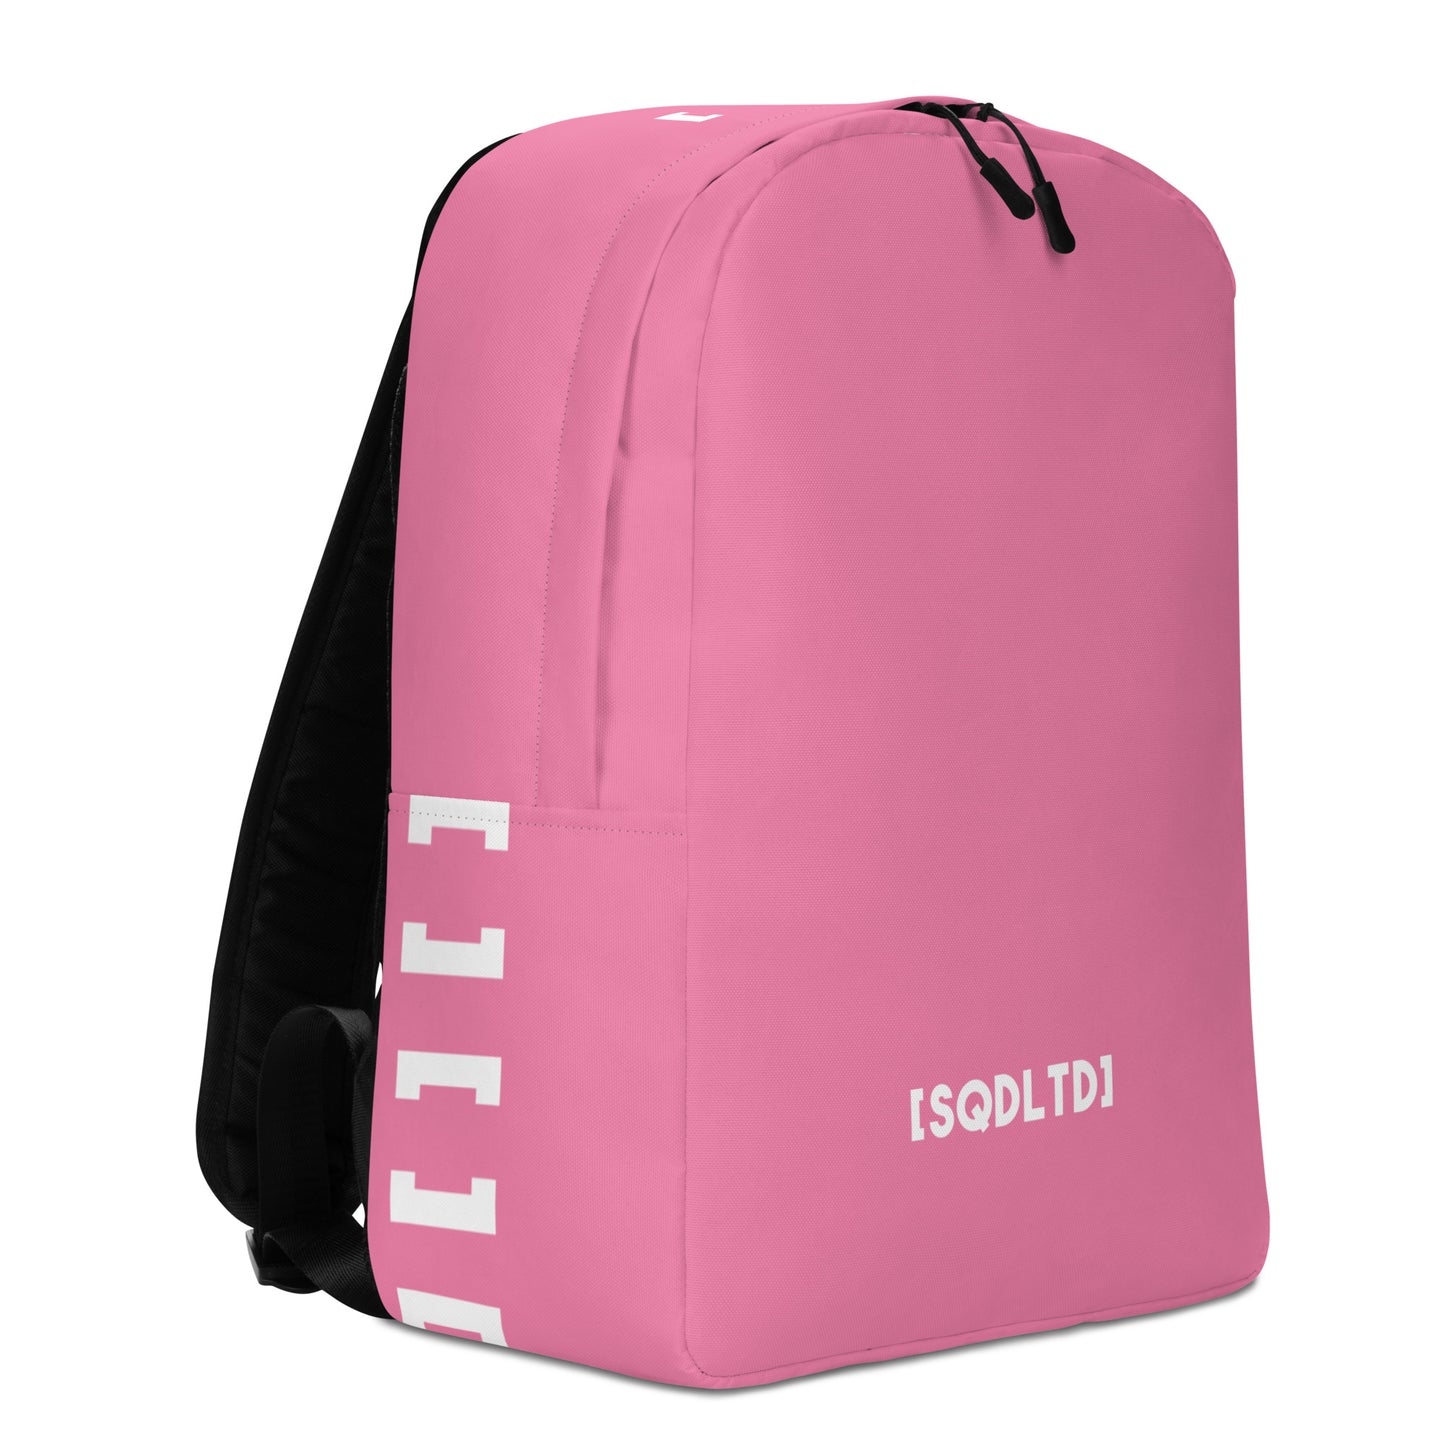 Sqdltd SP23 Minimalist Backpack PK